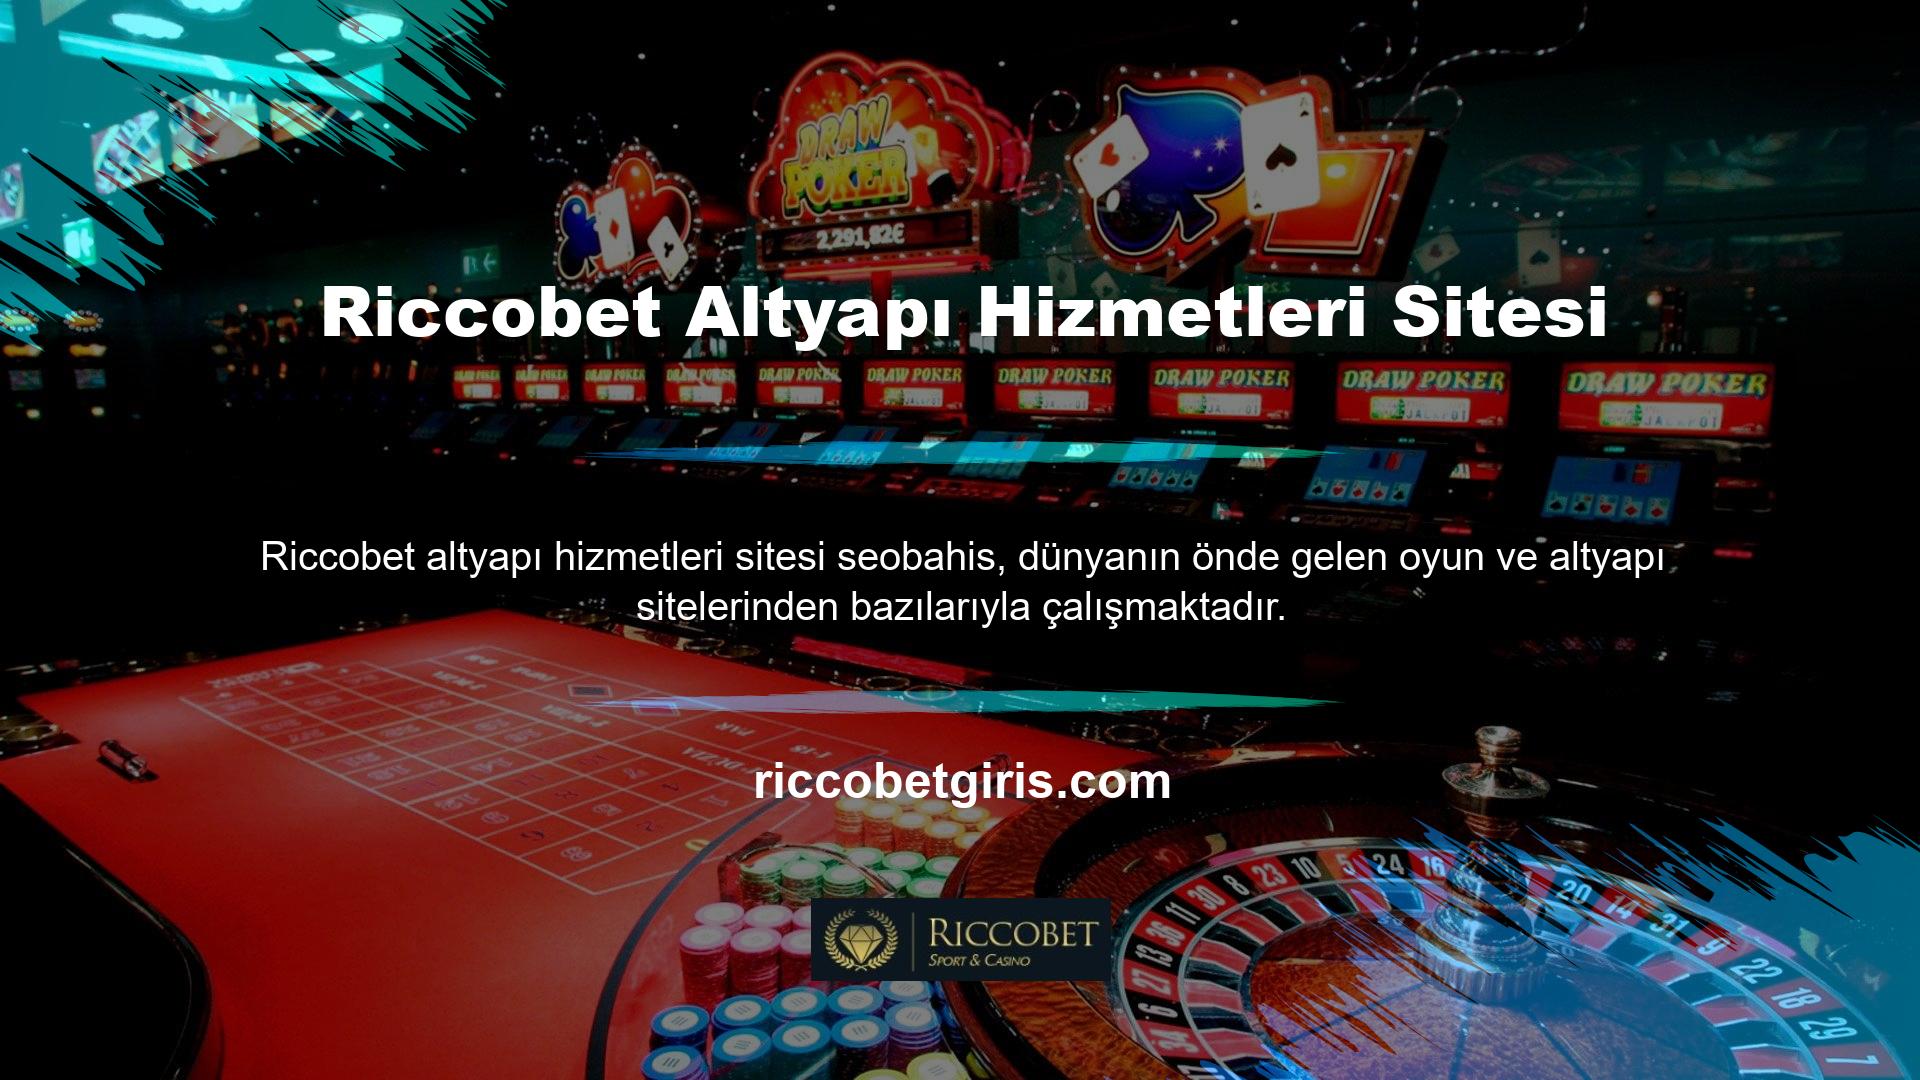 Riccobet slot web sitesine ürün sağlayan çok sayıda altyapı sitesi de bulunmaktadır